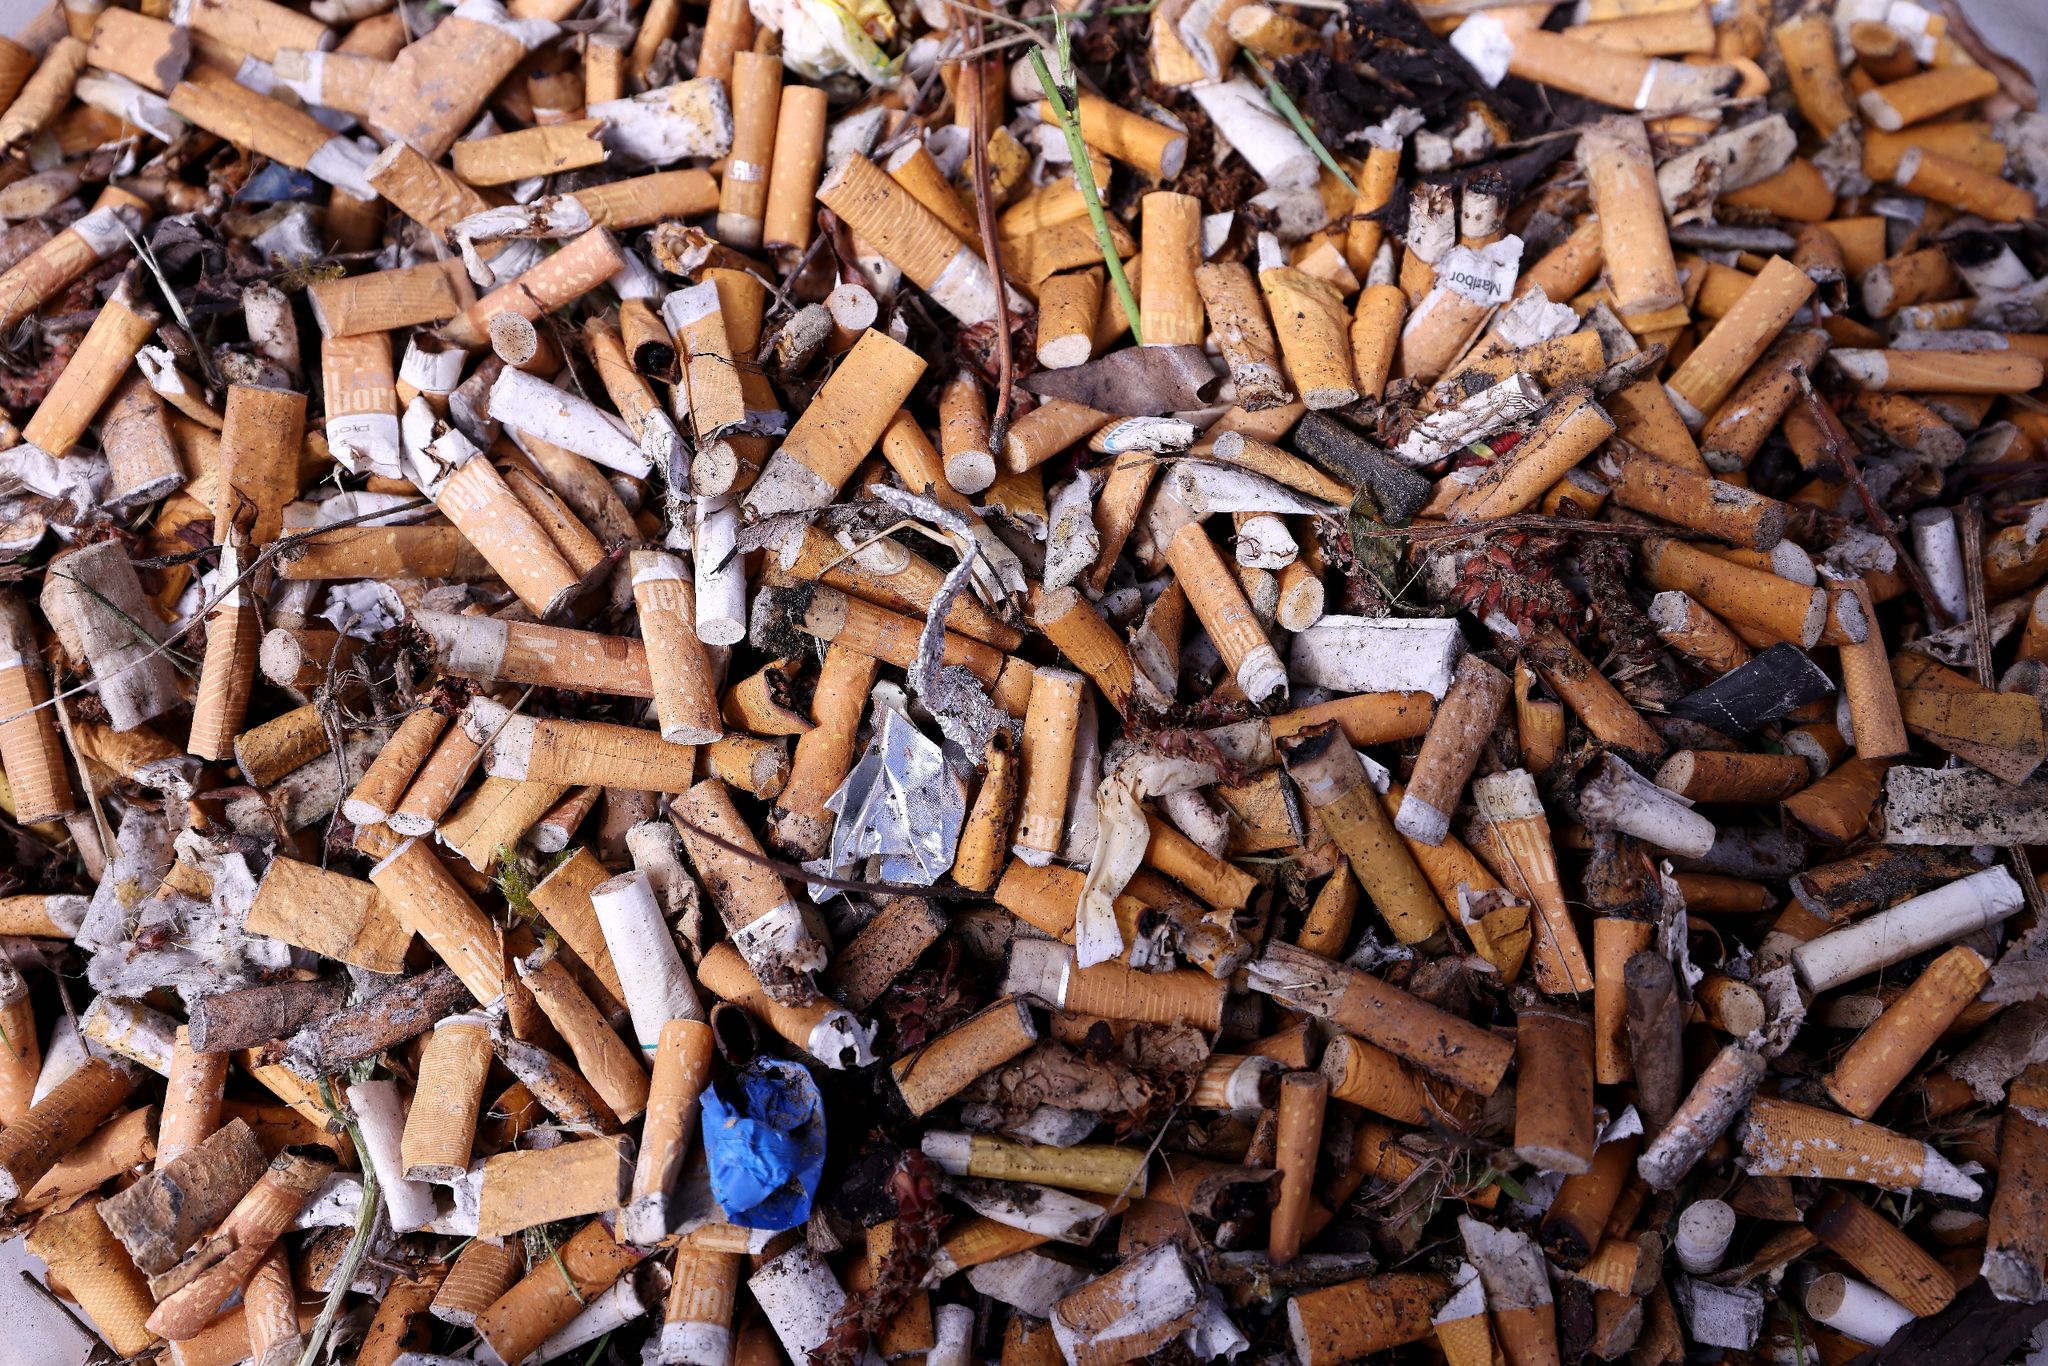 Zigarettenkippen sind nach dem Einsammeln in einem Kunststoffrohr aufbewahrt.